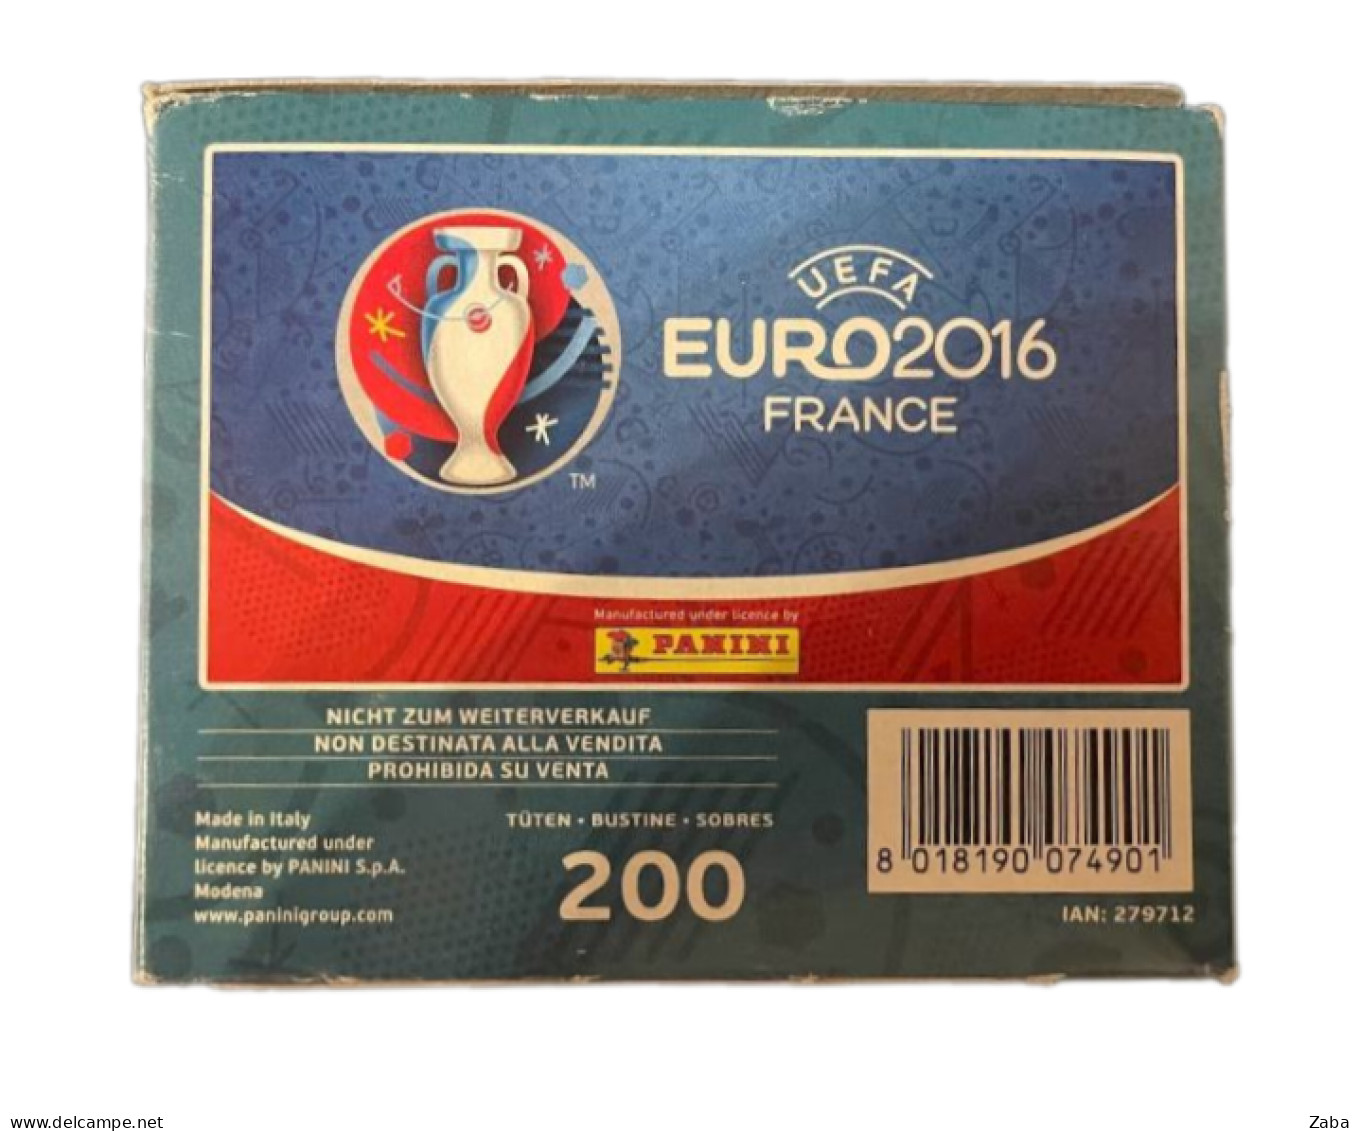 Panini EURO 2016 Lidl Box, 200 Packets, Not Opened! - Edición Italiana